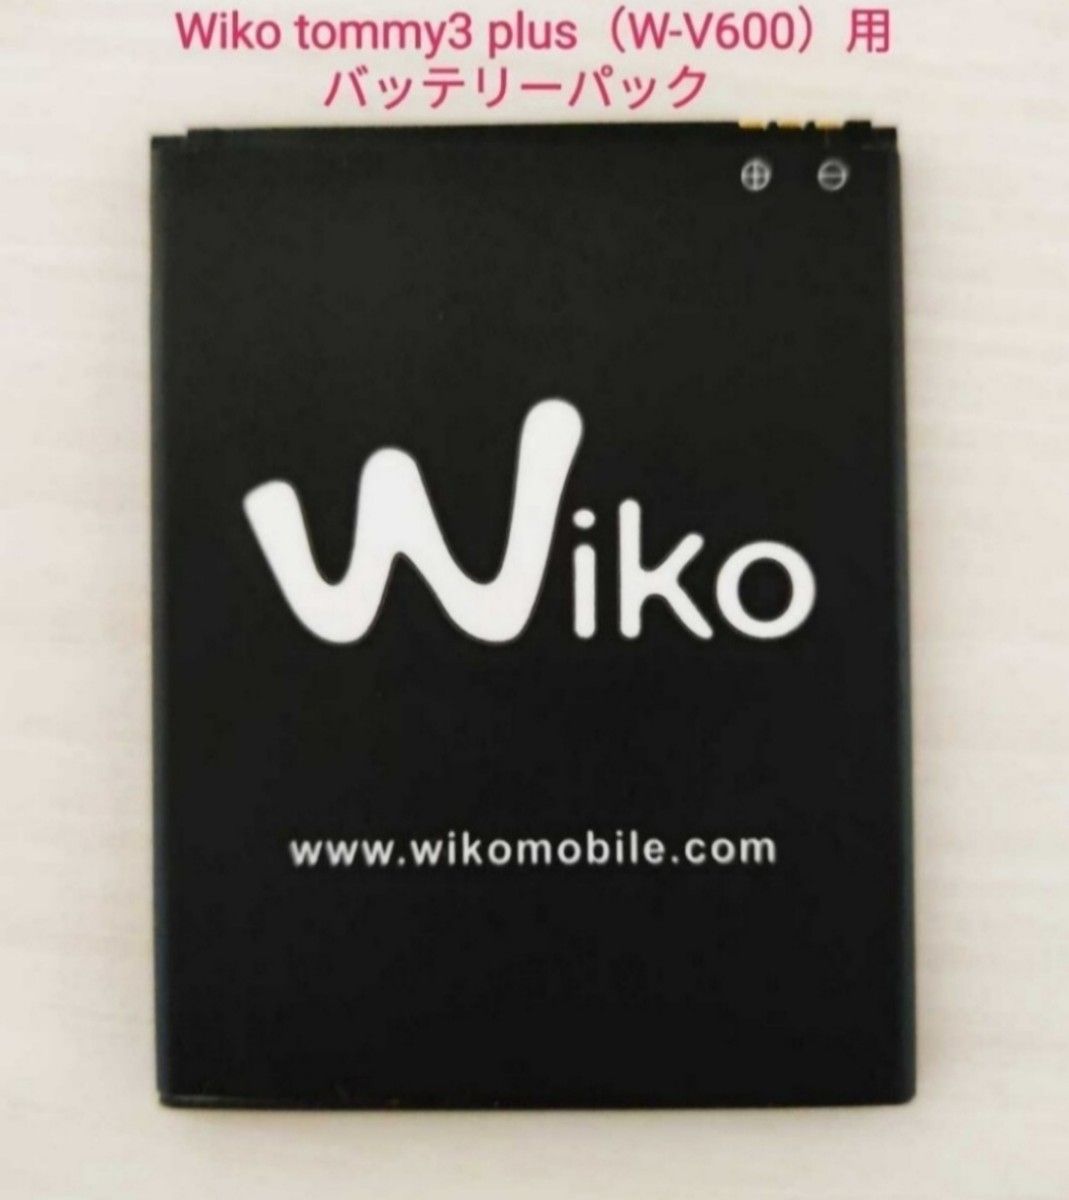 Wiko tommy3 plus（W-V600）用 バッテリーパック 電池パック 2900mAh【新品・未使用品】